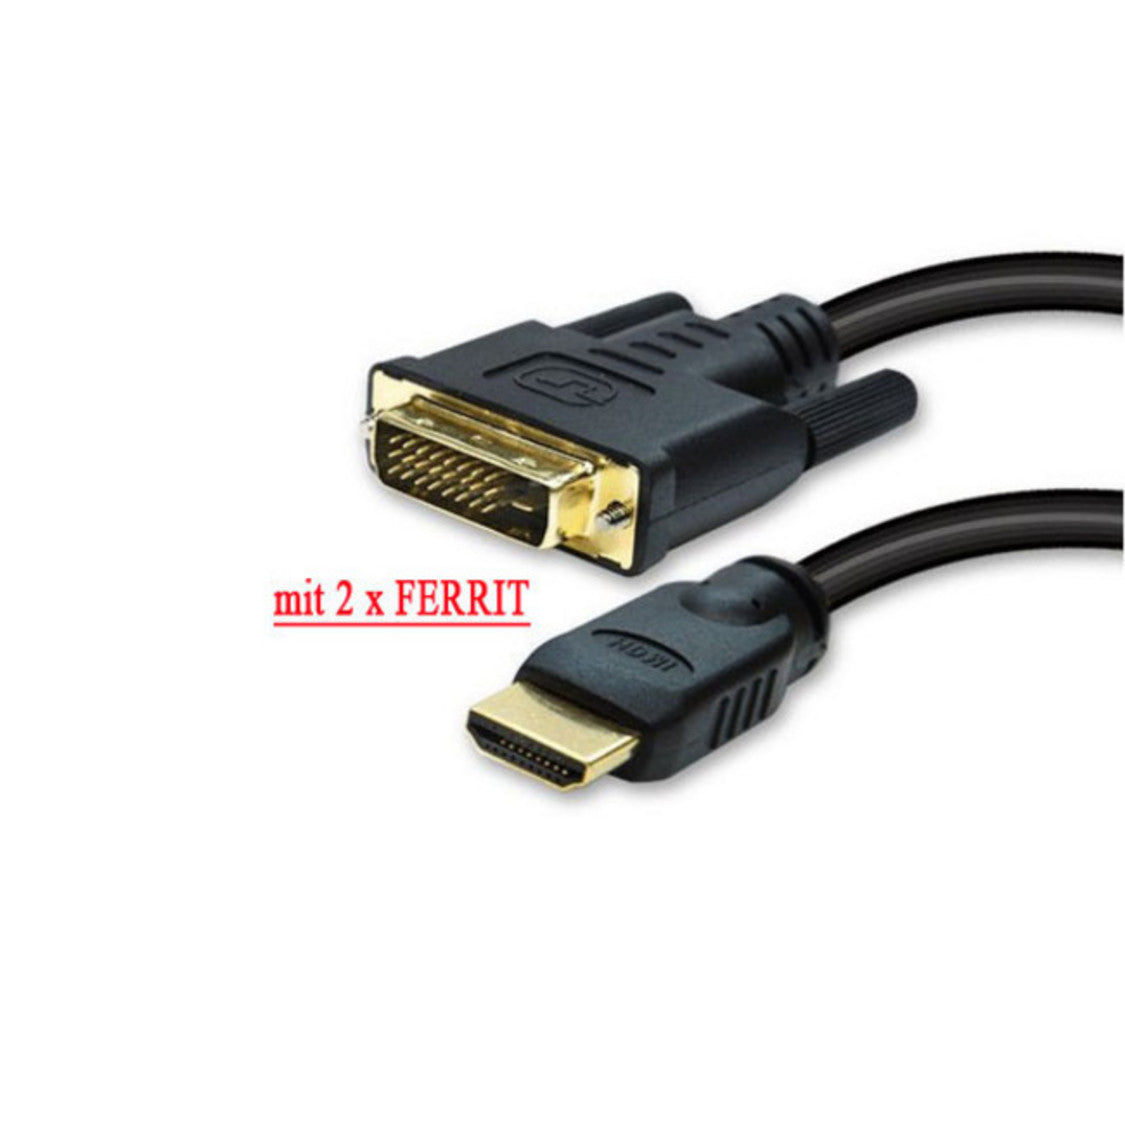 HDMI Stecker auf DVI-D (18+1) Stecker, vergoldete Kontakte, 2x Ferrit